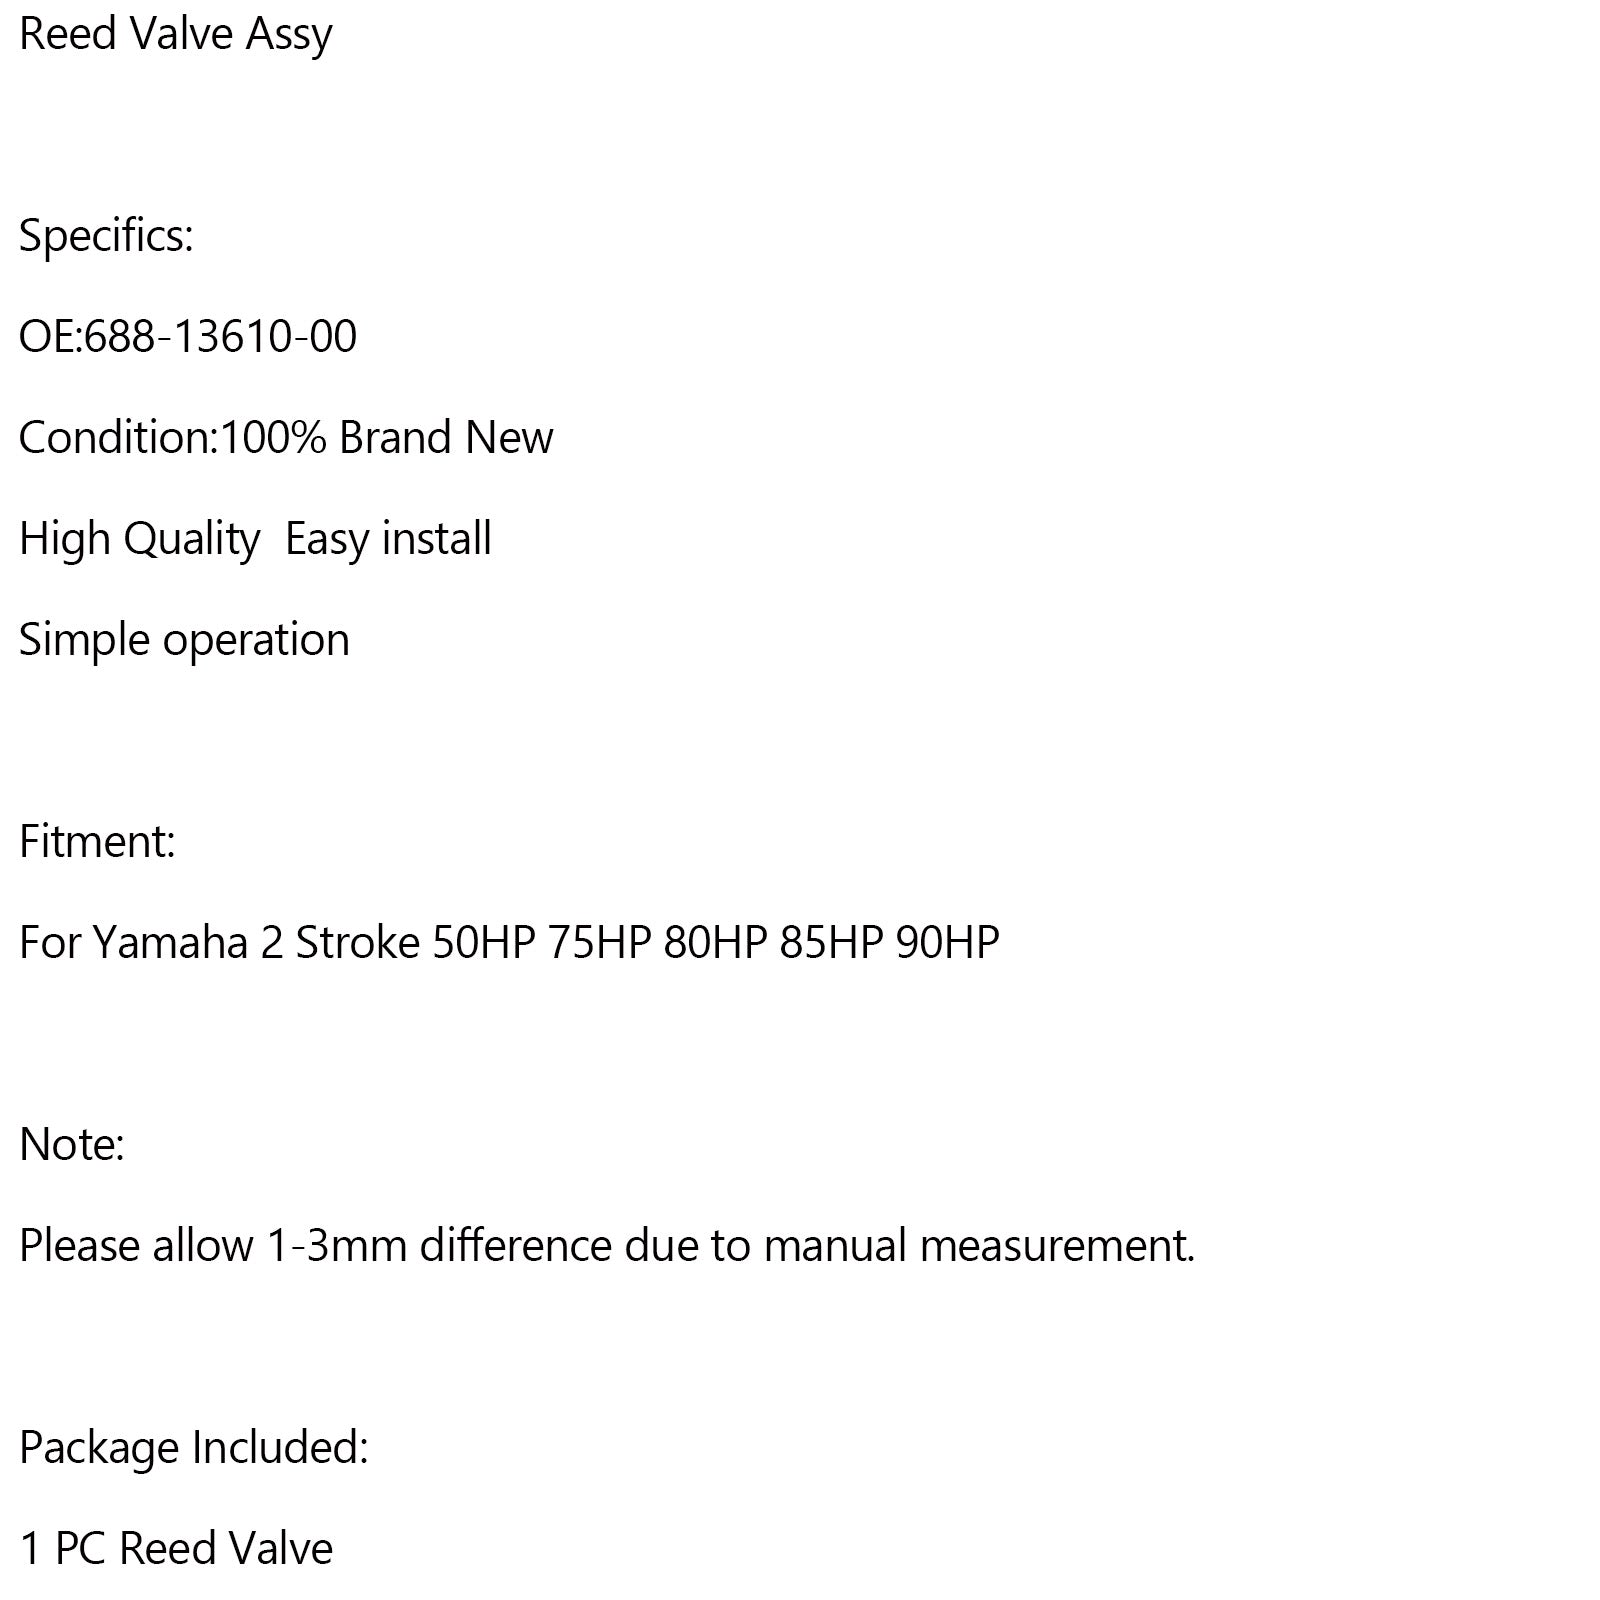 688-13610-00 Reed Valve Assy for Yamaha 2 stroke 50HP 75HP 80HP 85HP 90HP